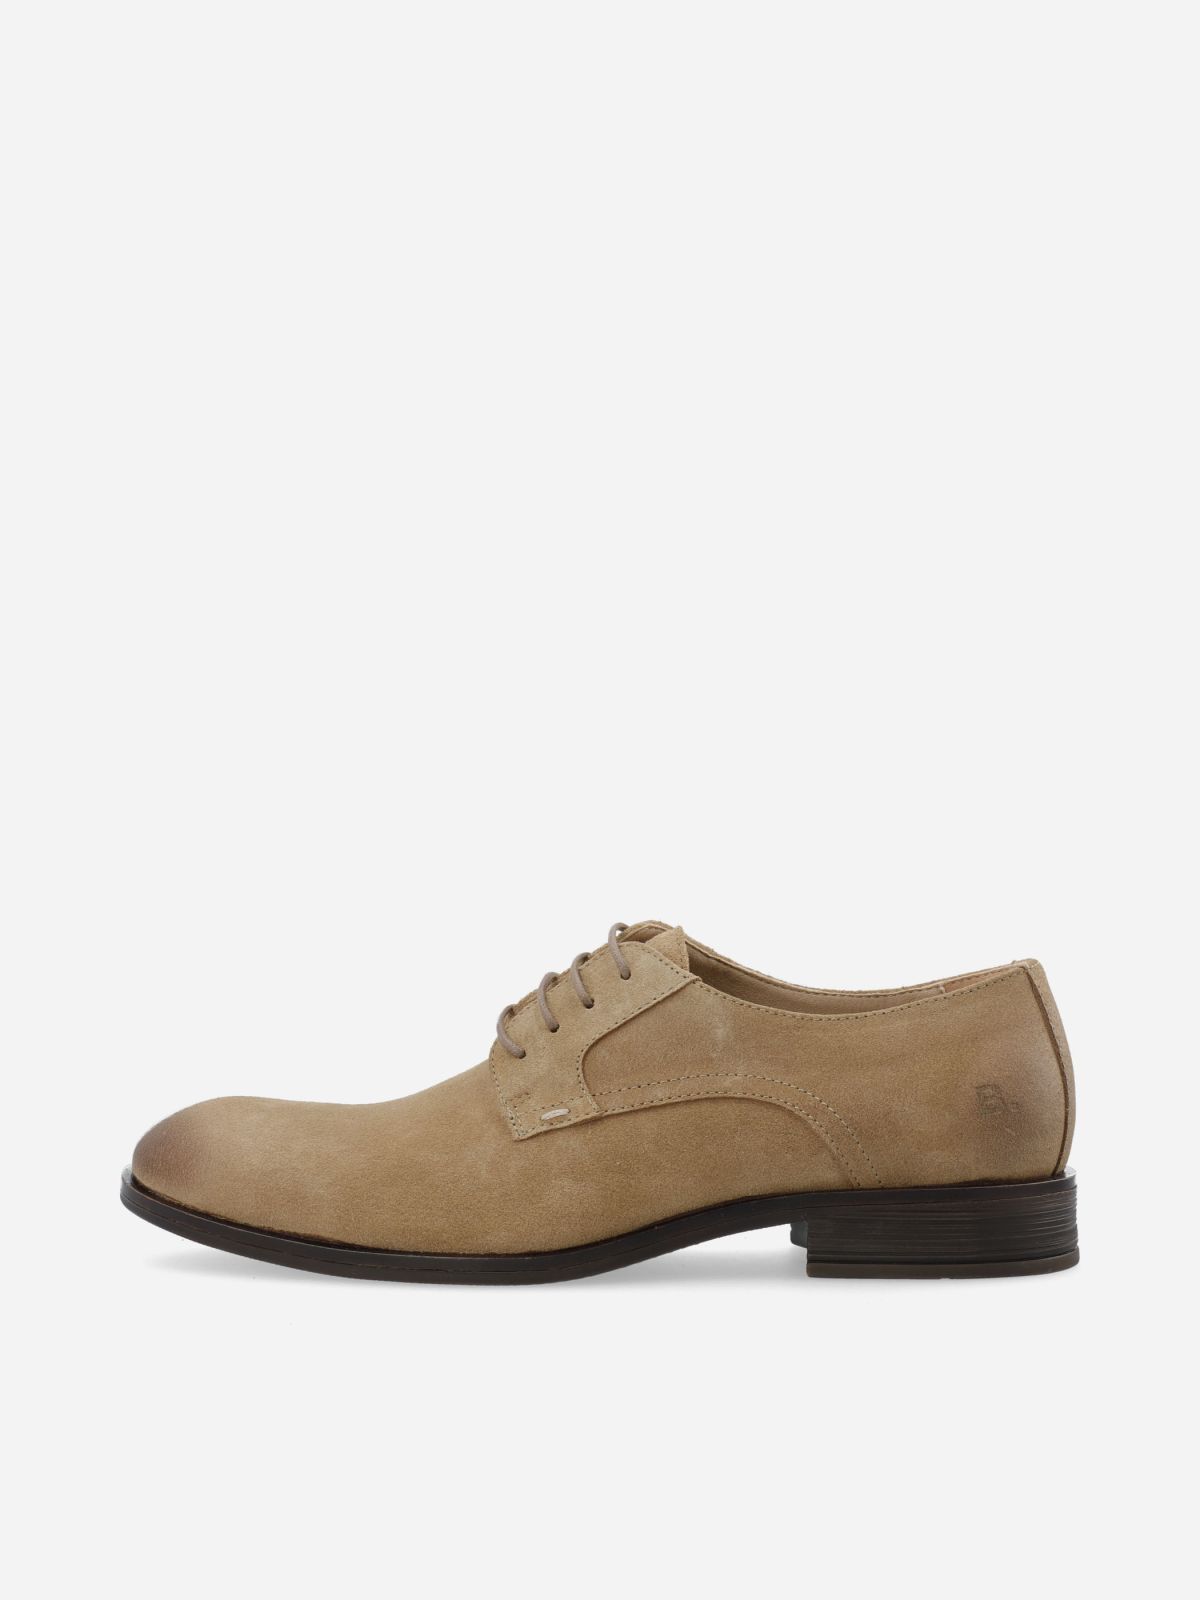  נעלי זמש אלגנטיות / גברים של BIANCO